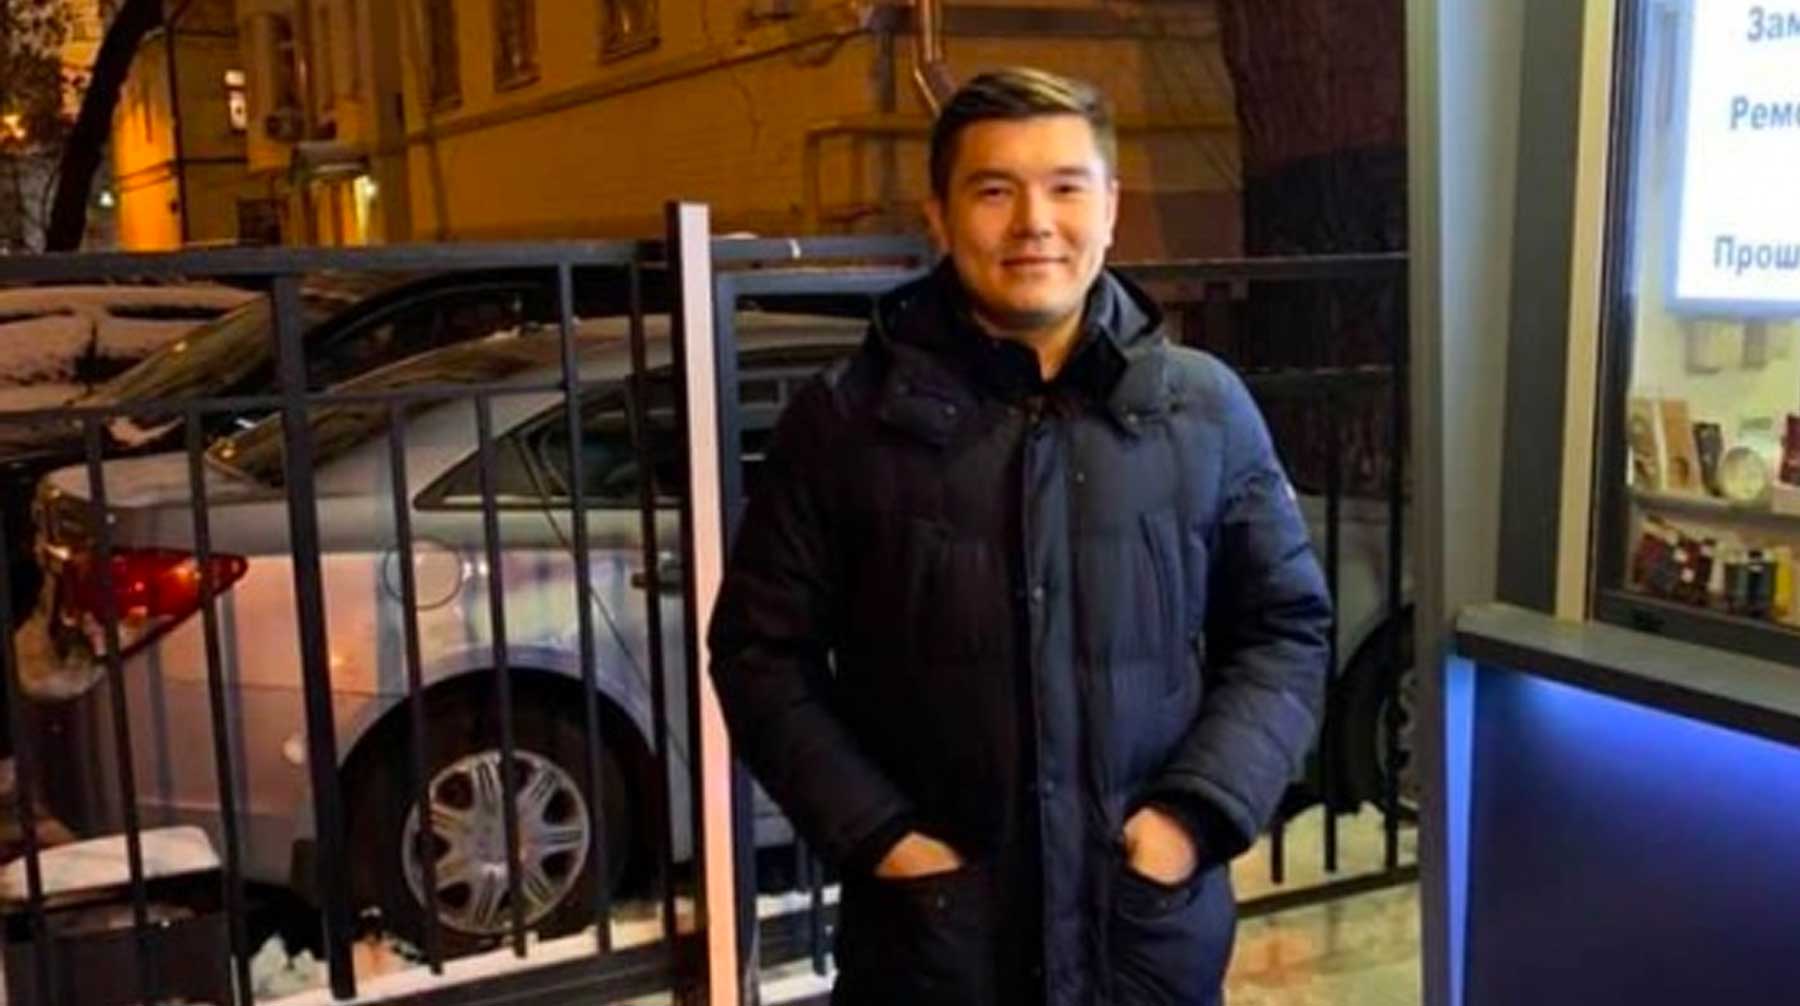 Ранее сообщалось, что Айсултан Назарбаев укусил препятствовавшего ему полицейского Айсултан Назарбаев